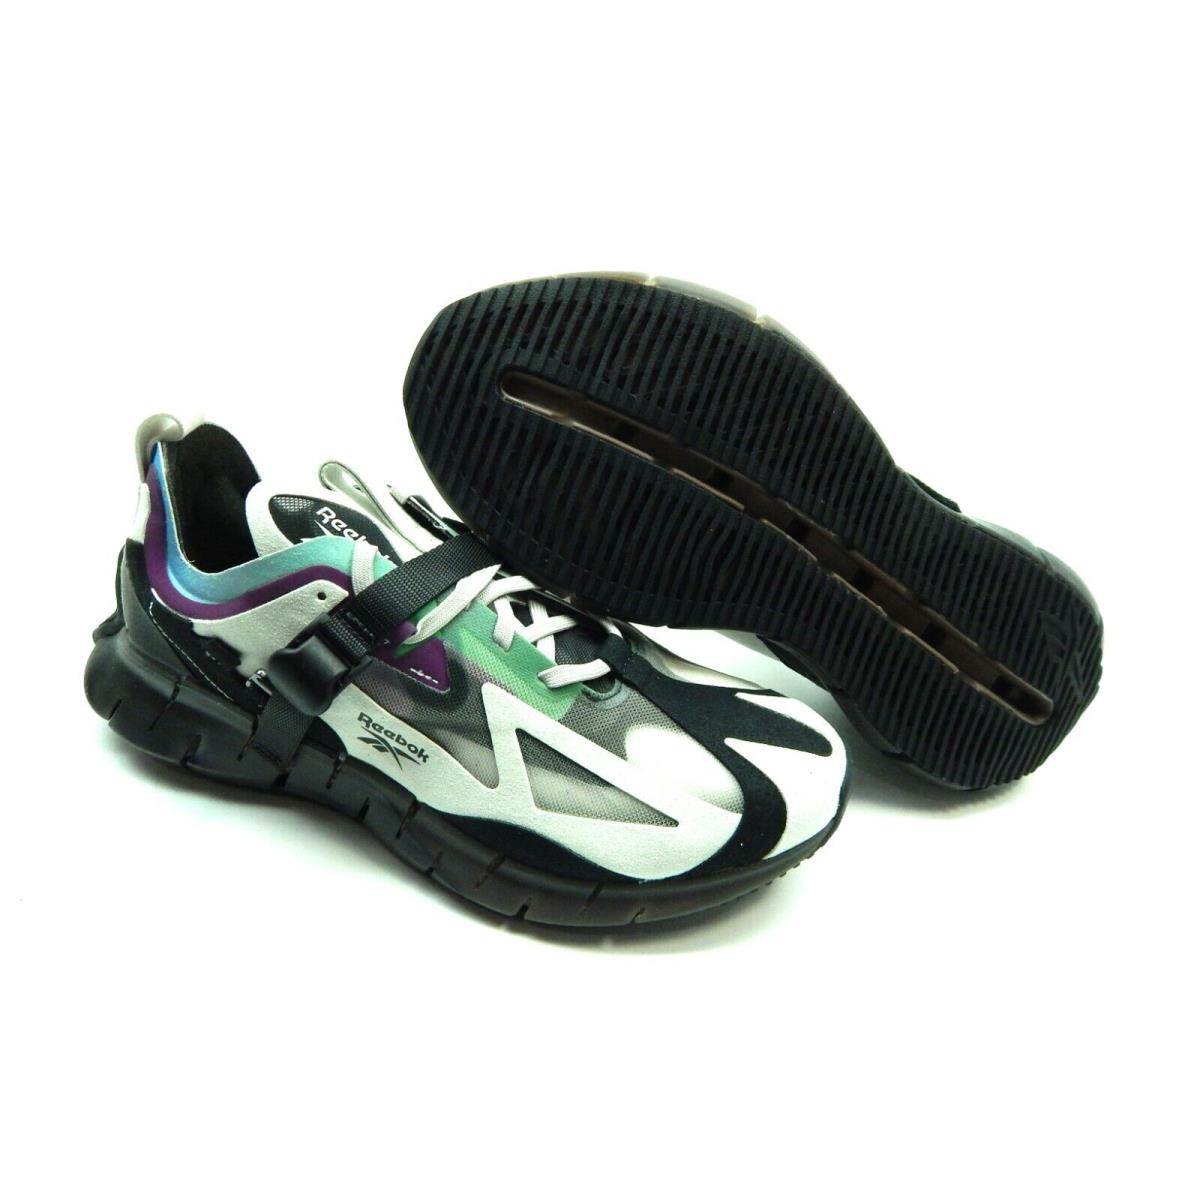 Reebok shoes ZIG KINETICA CONCEPT - Multicolor 5